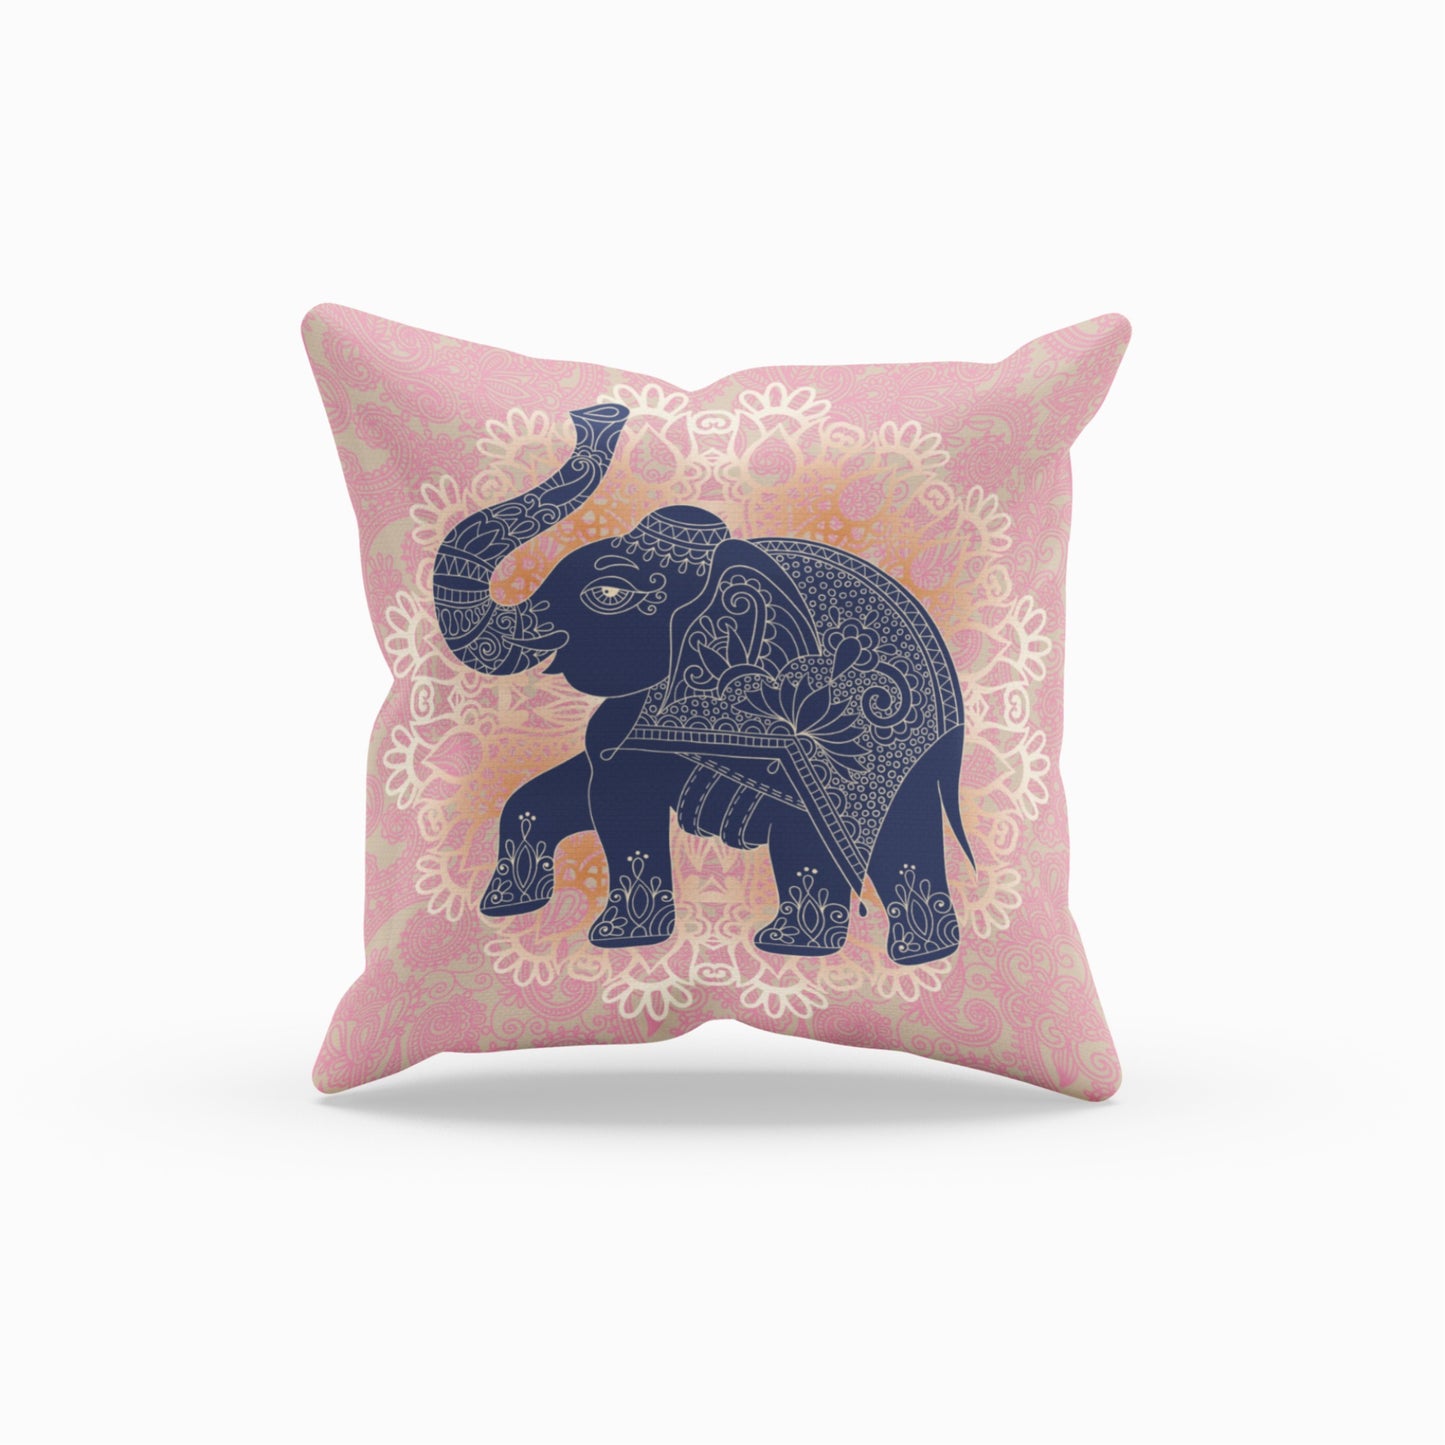 Homeezone's Pink Elephant Throw Pillow